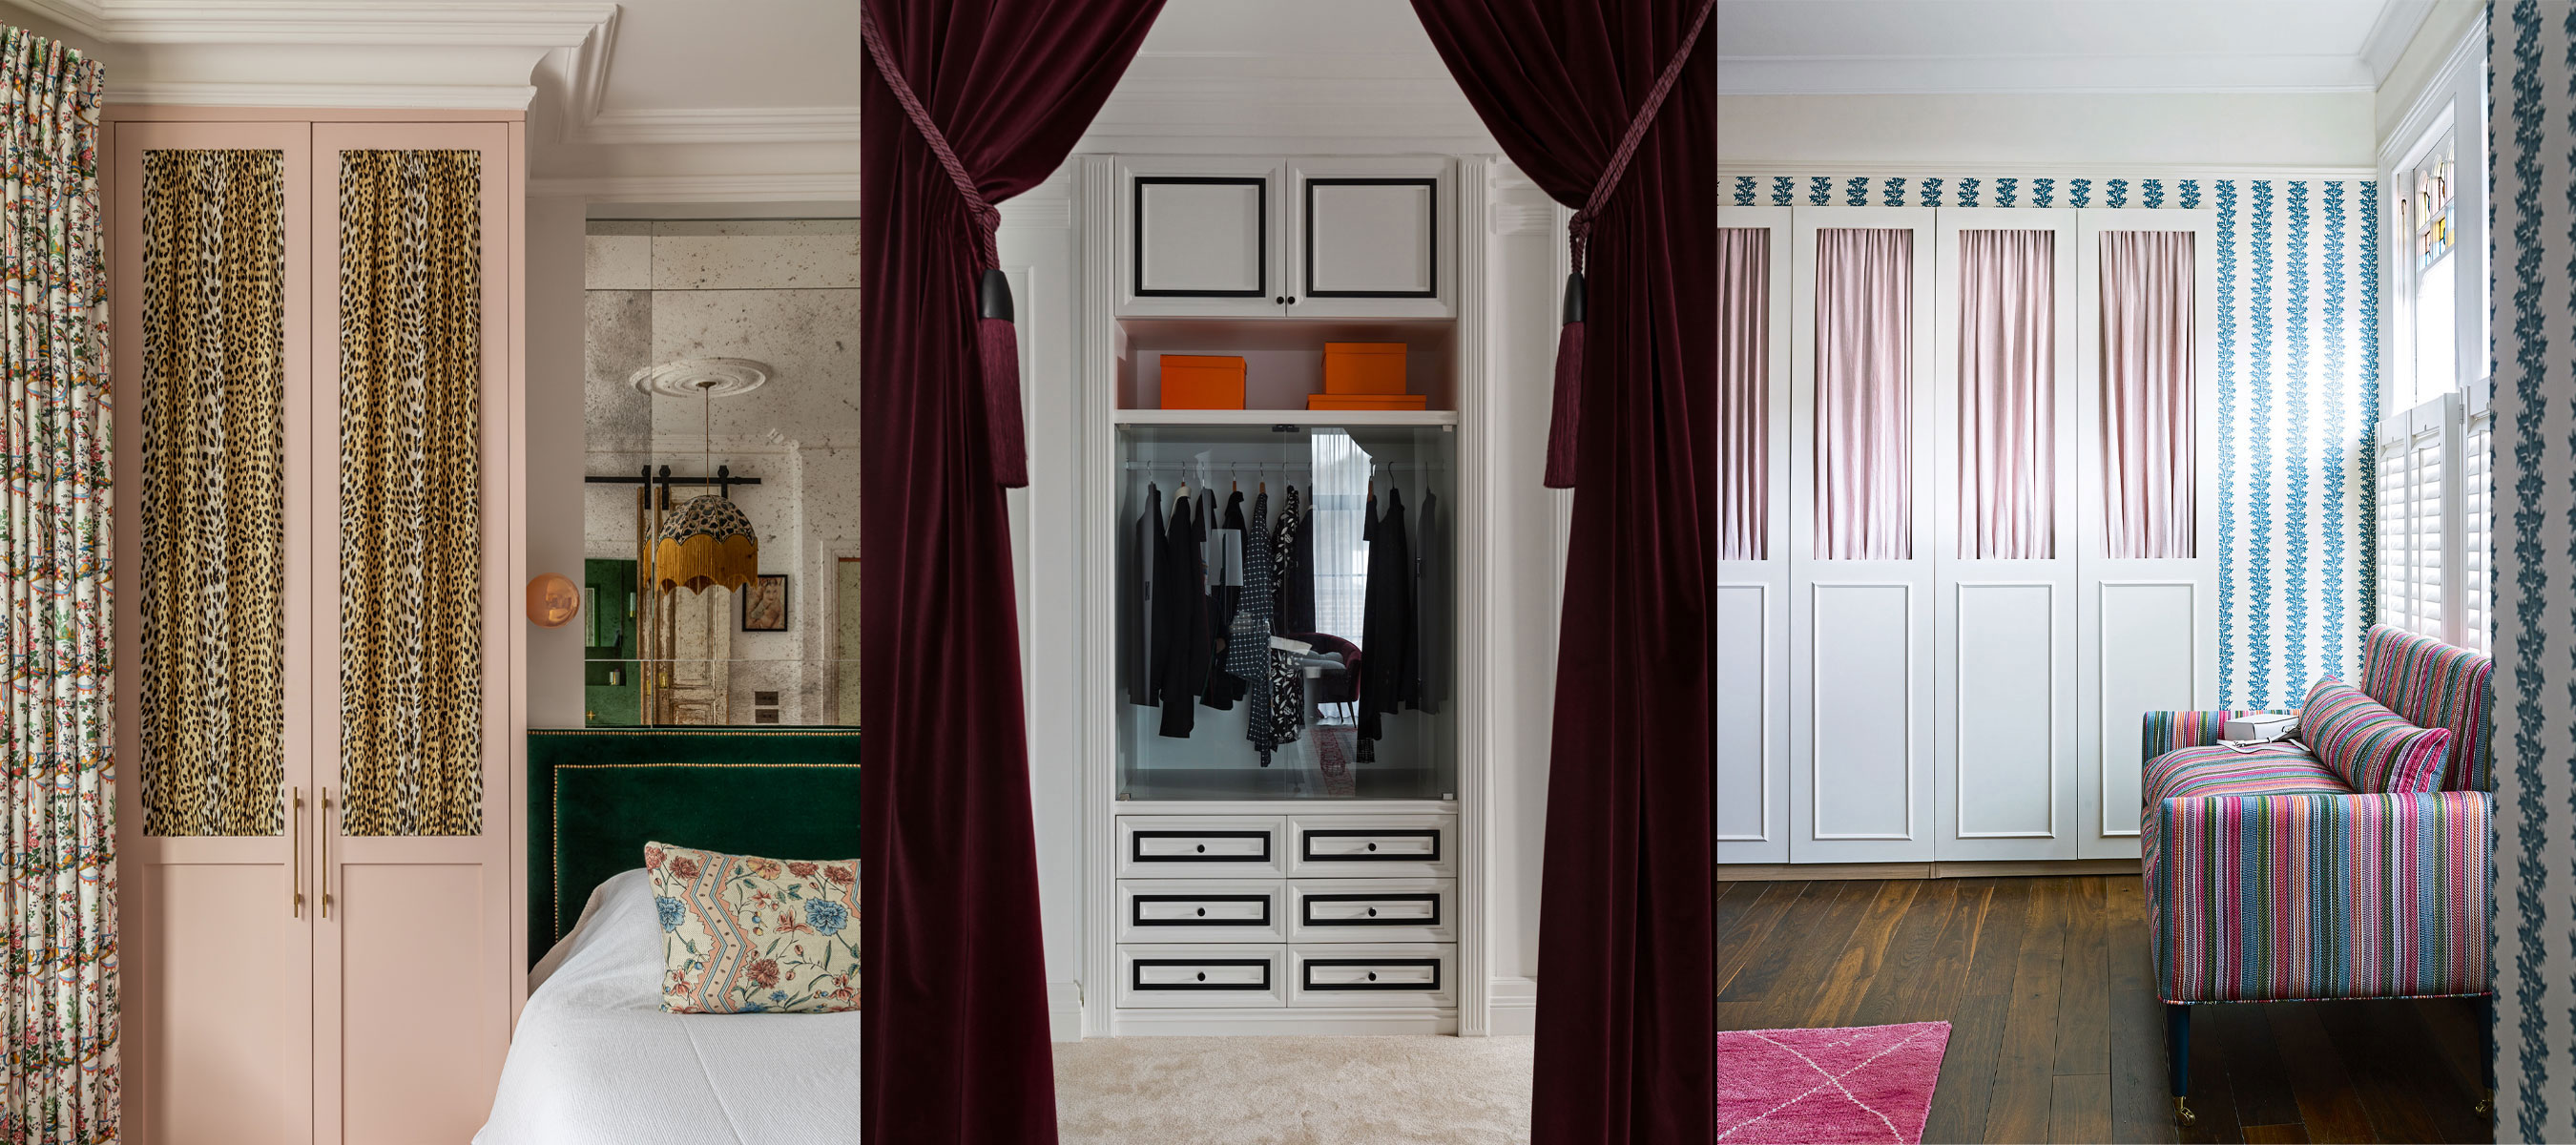 Curtain Closet Ideas 11 Designs That Add Elegant Texture To A E